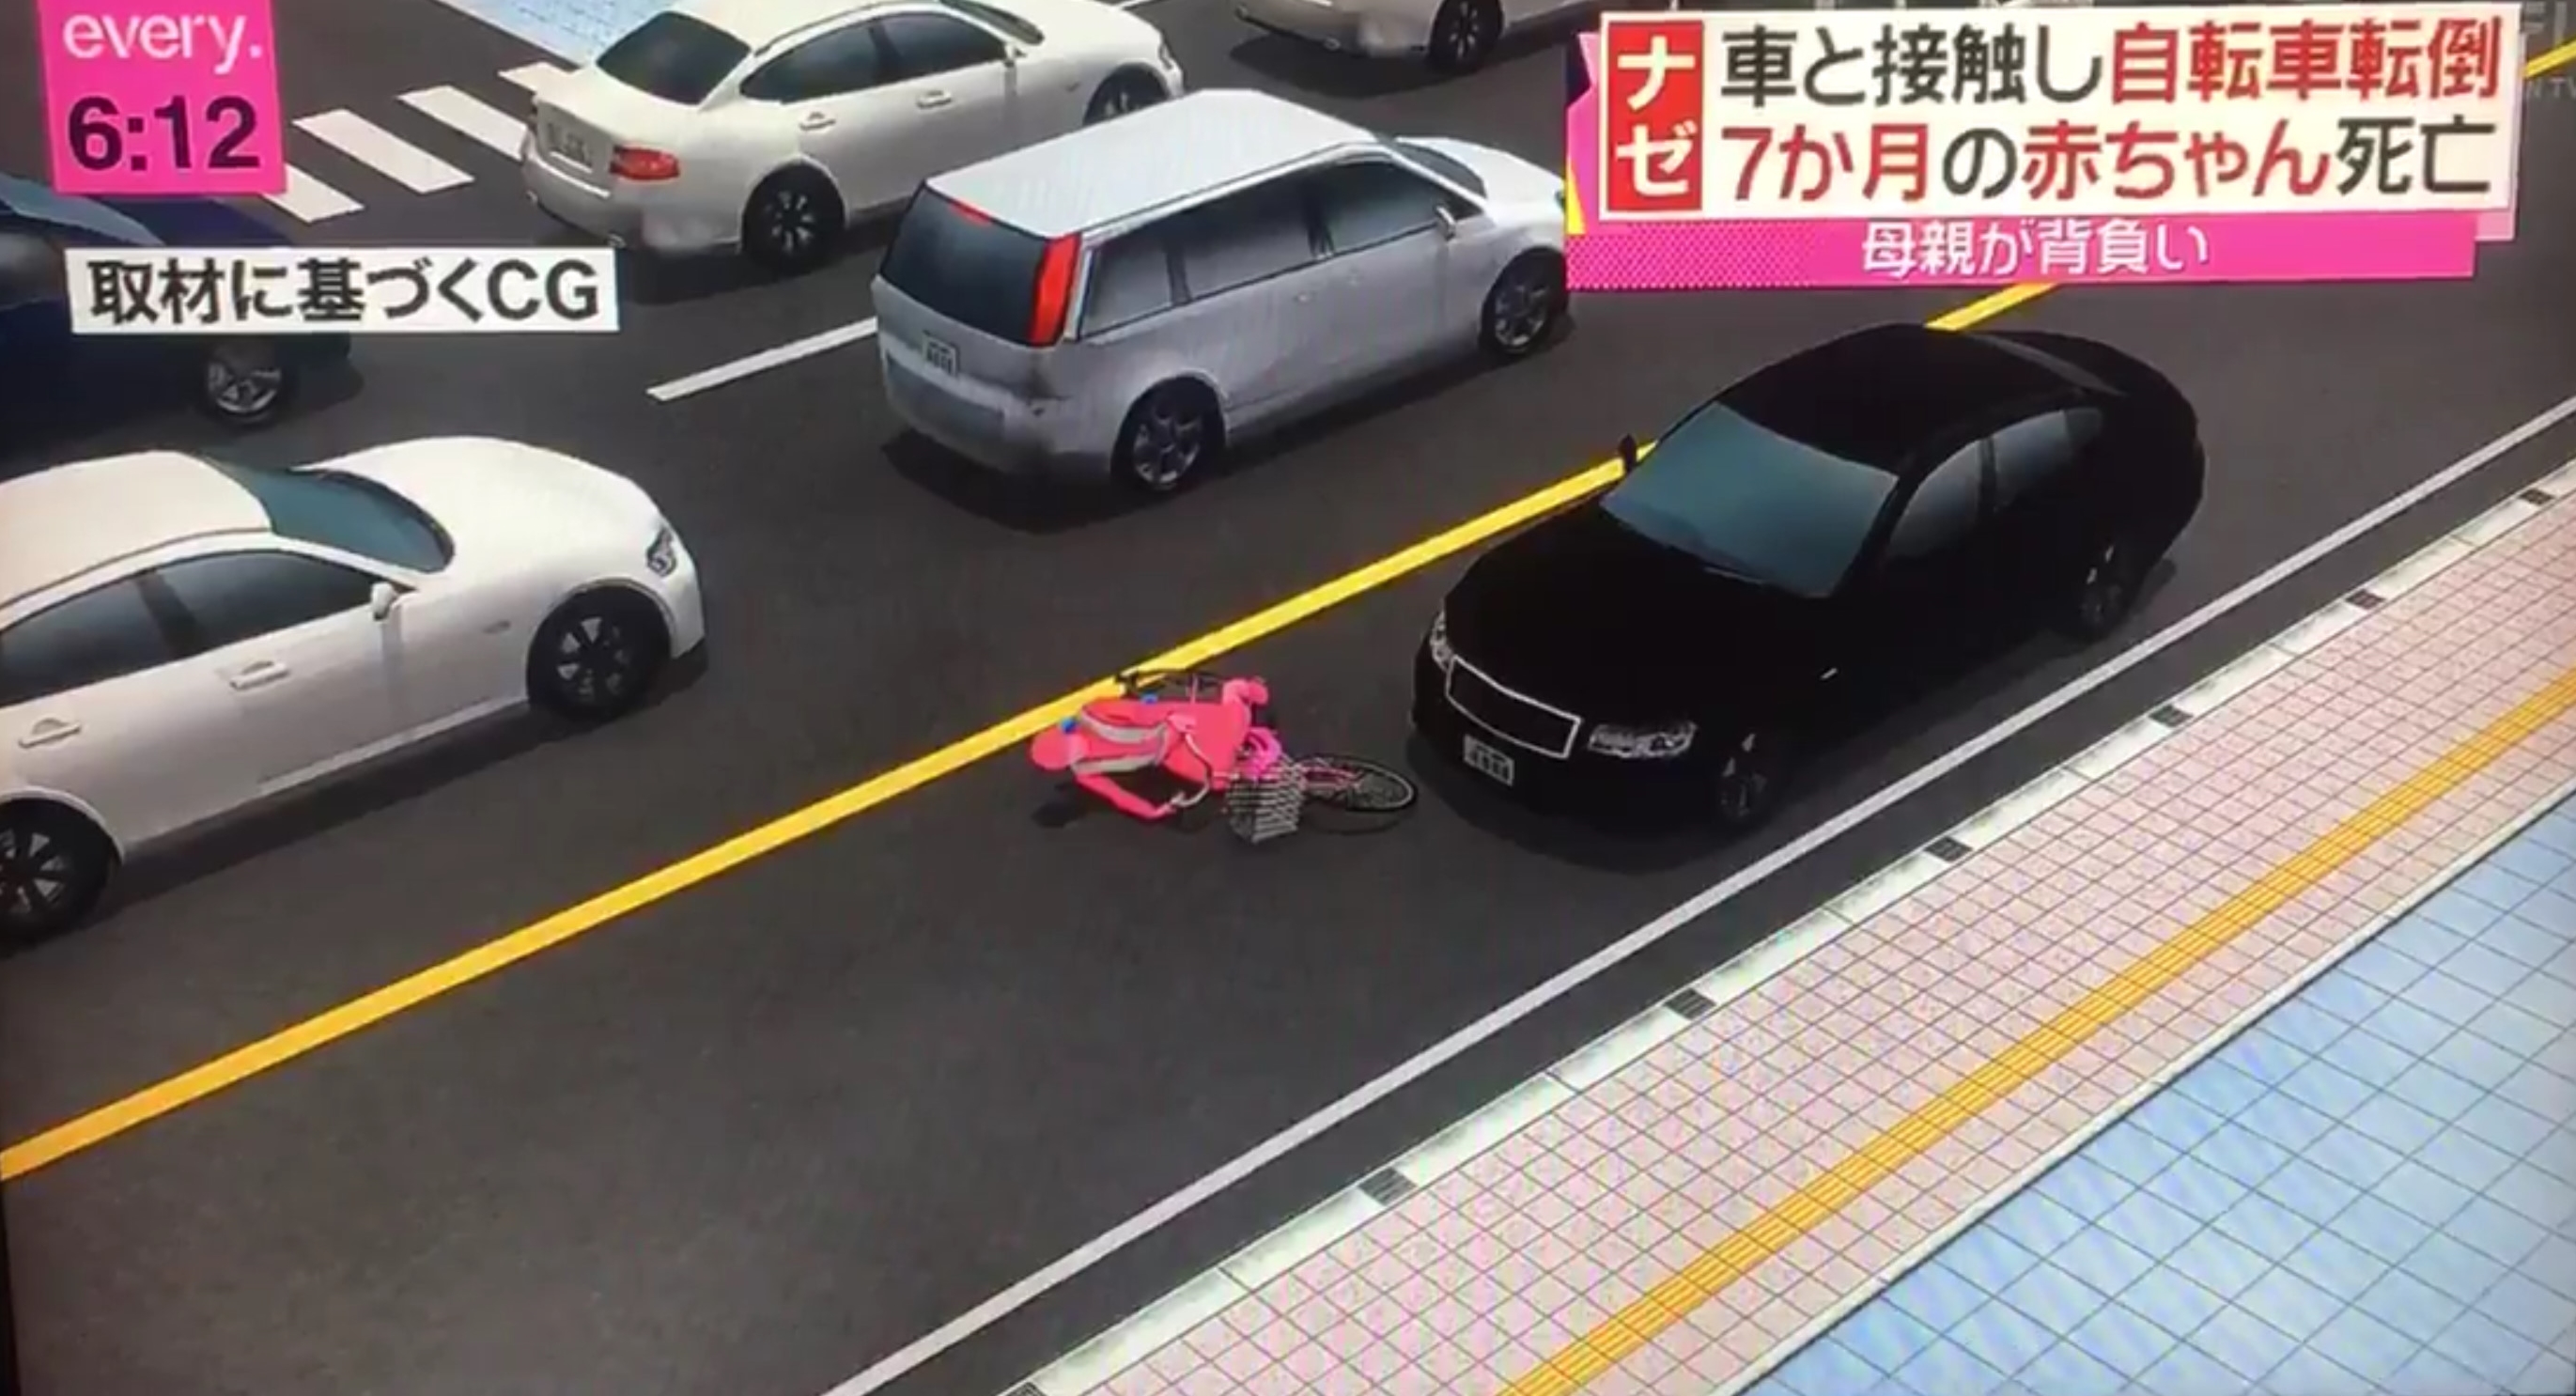 クルマを運転するとはこういうこと 自転車接触でおんぶの赤ちゃん死亡 真木大輔 戸田市議会議員